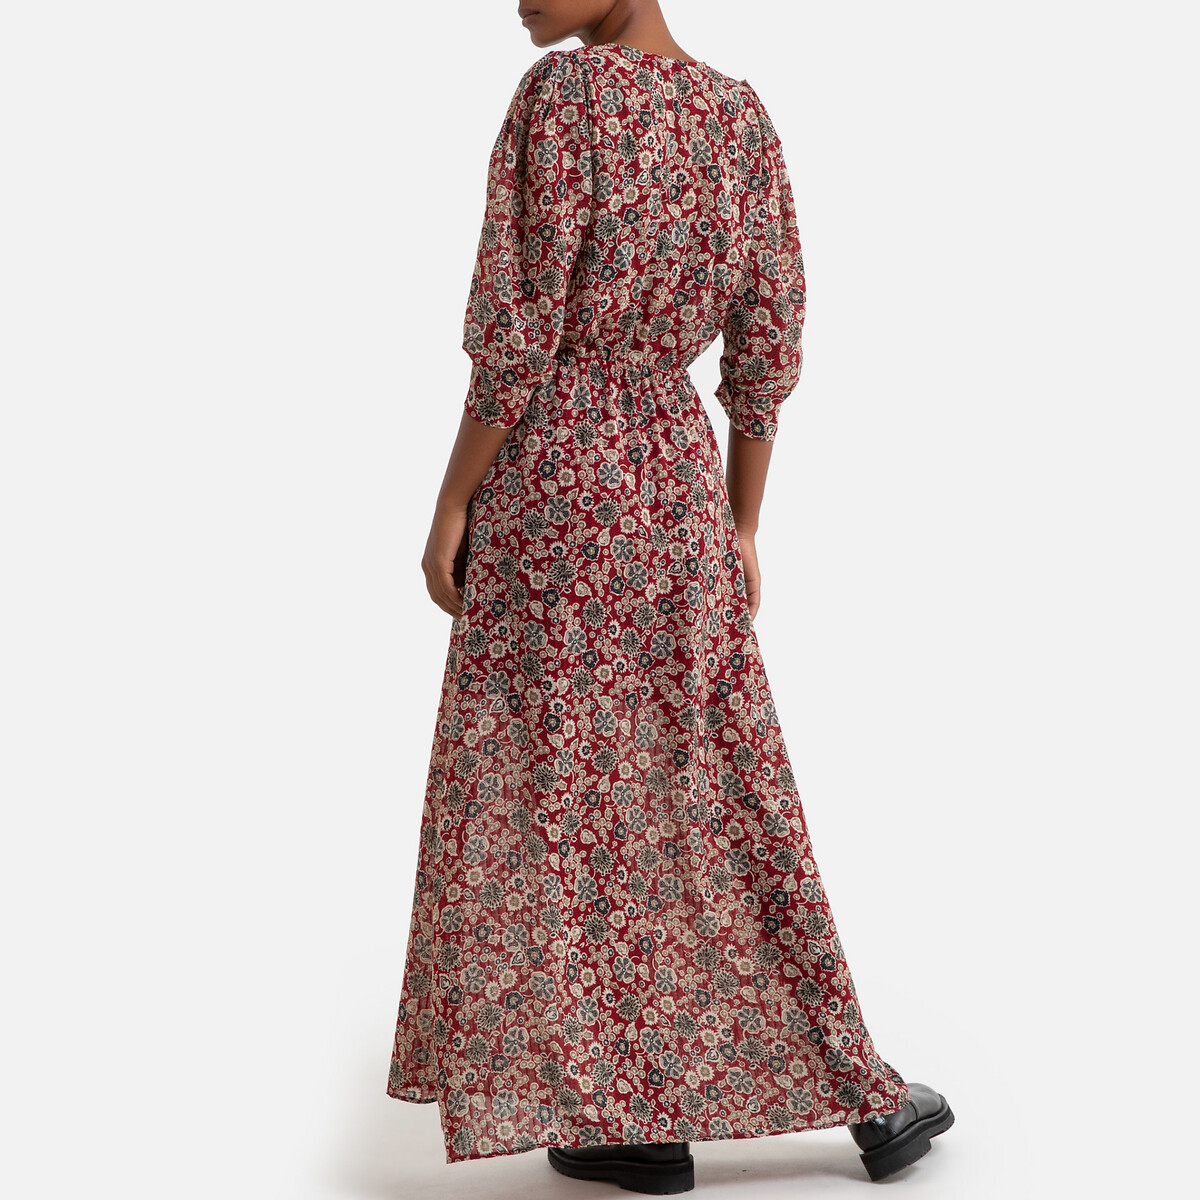 Платье La Redoute С принтом длинное из вуали 38 (FR) - 44 (RUS) красный, размер 38 (FR) - 44 (RUS) С принтом длинное из вуали 38 (FR) - 44 (RUS) красный - фото 3